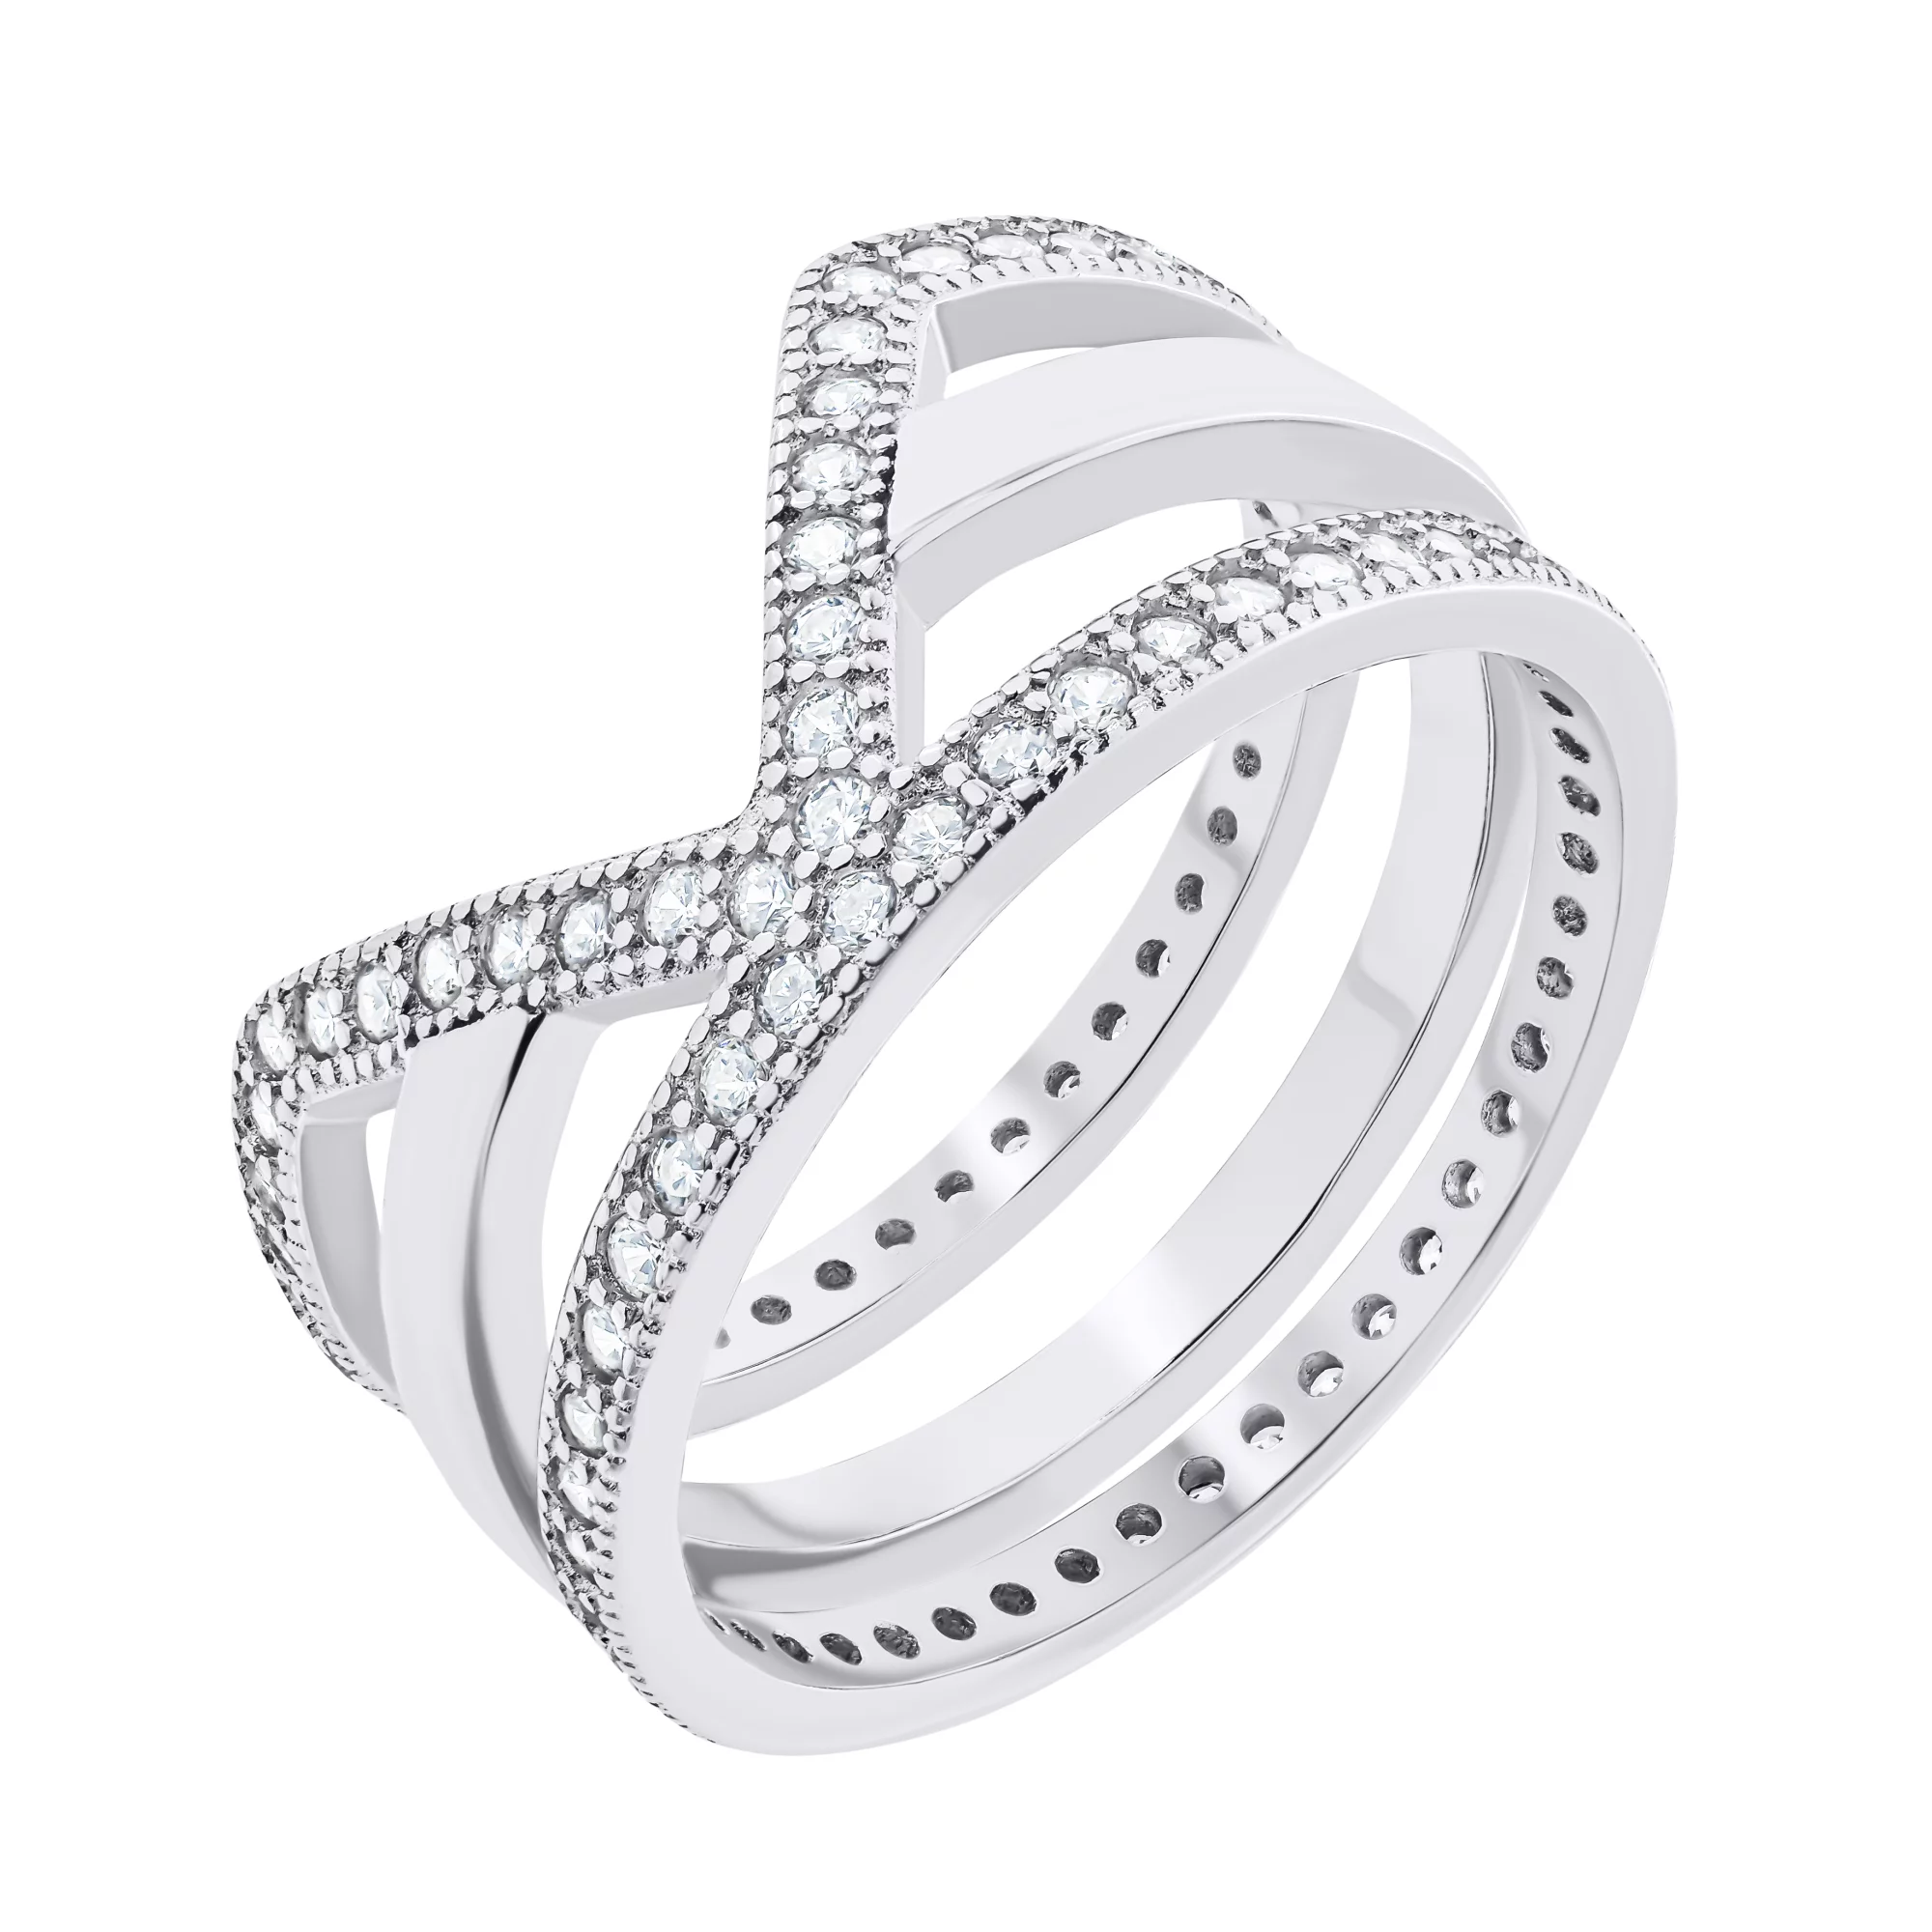 Фаланговое тройное серебряное кольцо с дорожками фианитов - 1528865 – изображение 1